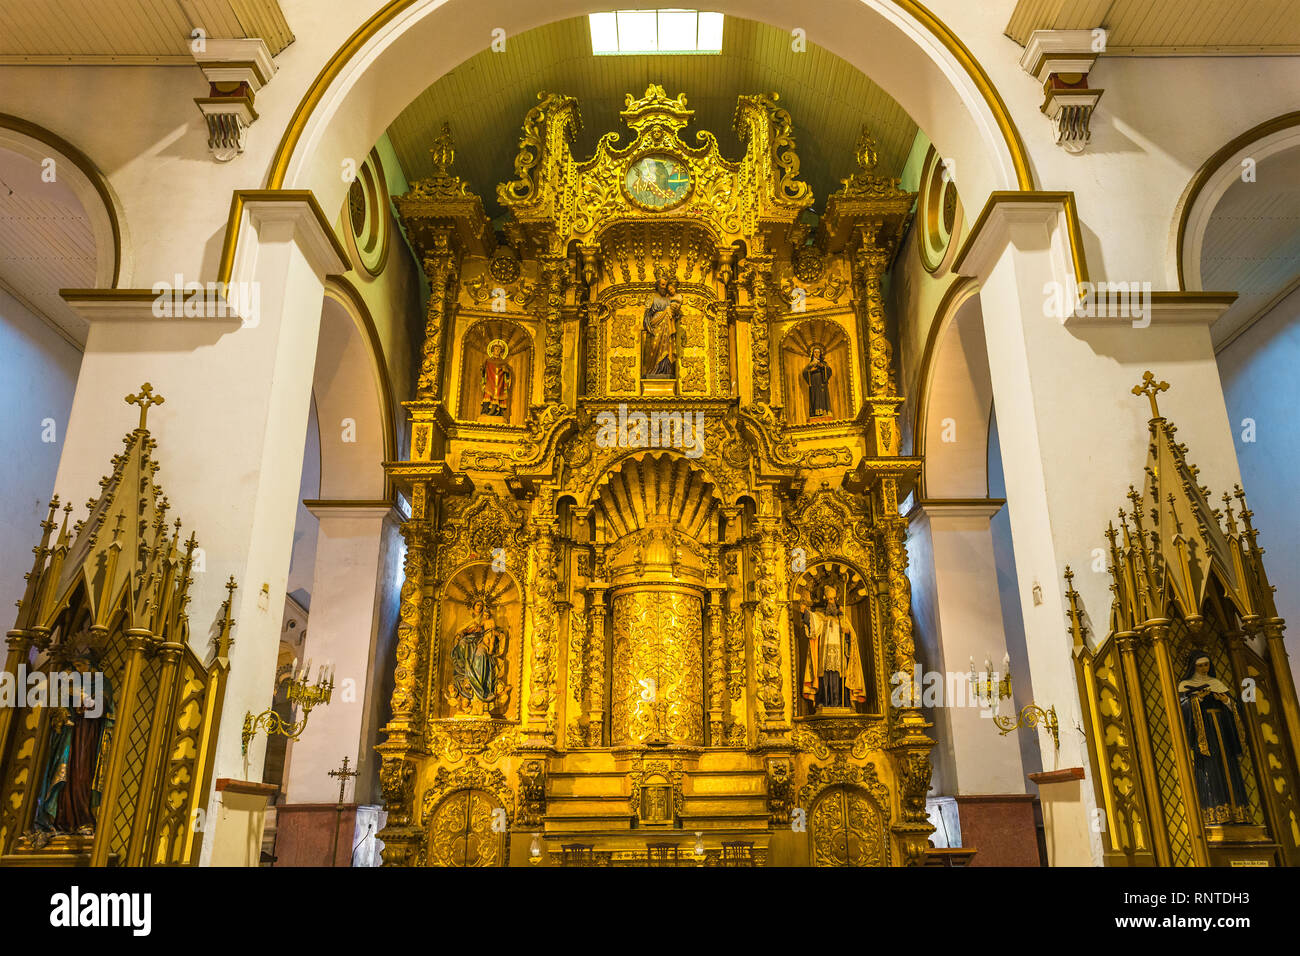 L'autel principal de l'église de San Jose dans le style baroque décoré de feuilles d'or et de statues, Panama City, Panama. Banque D'Images